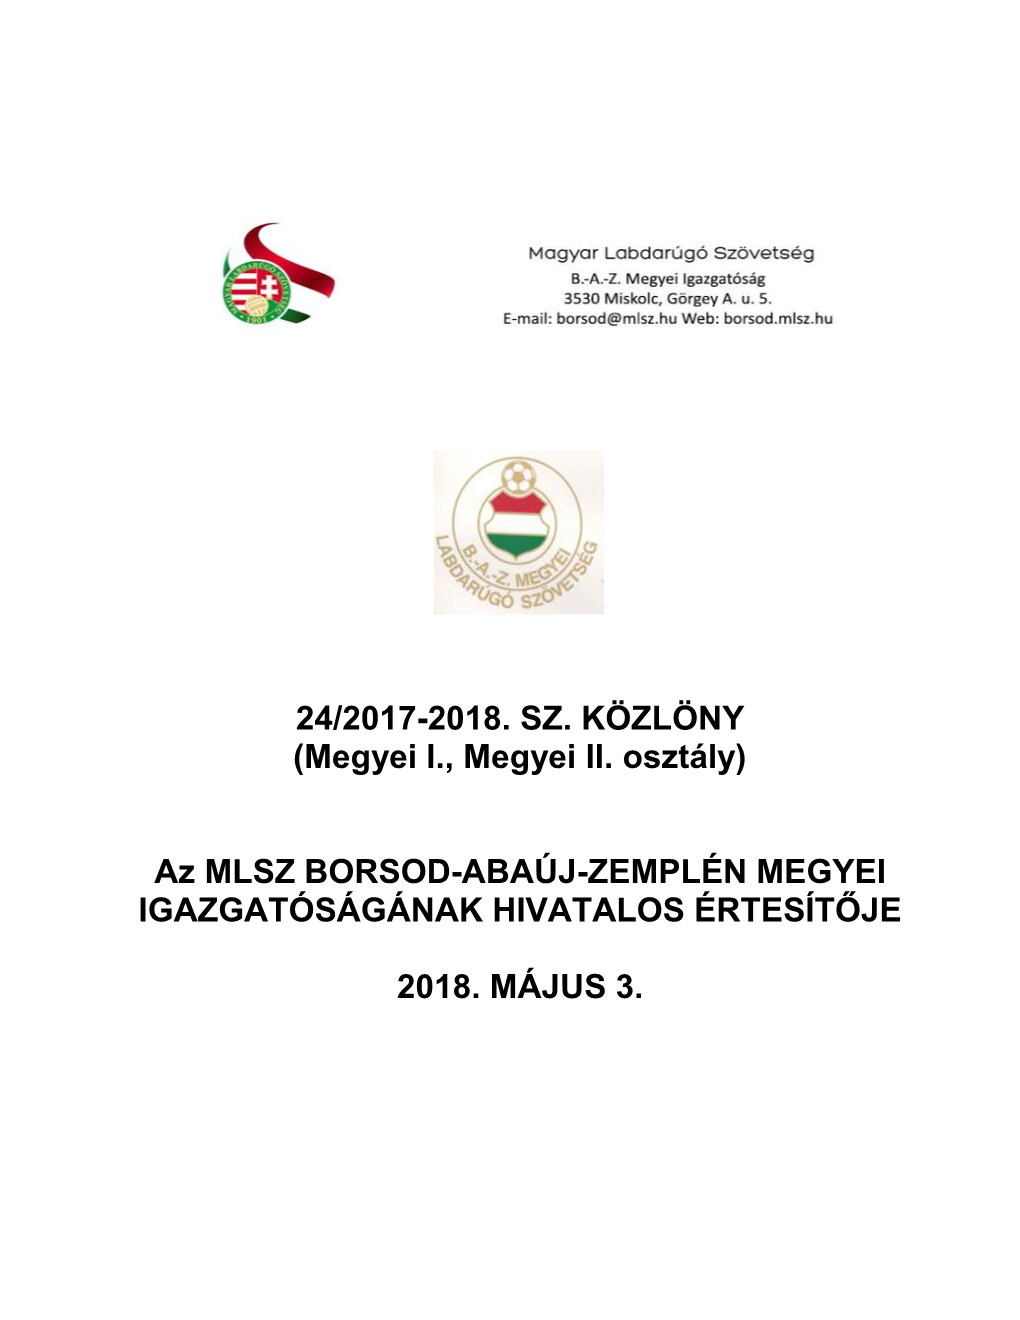 24/2017-2018. SZ. KÖZLÖNY (Megyei I., Megyei II